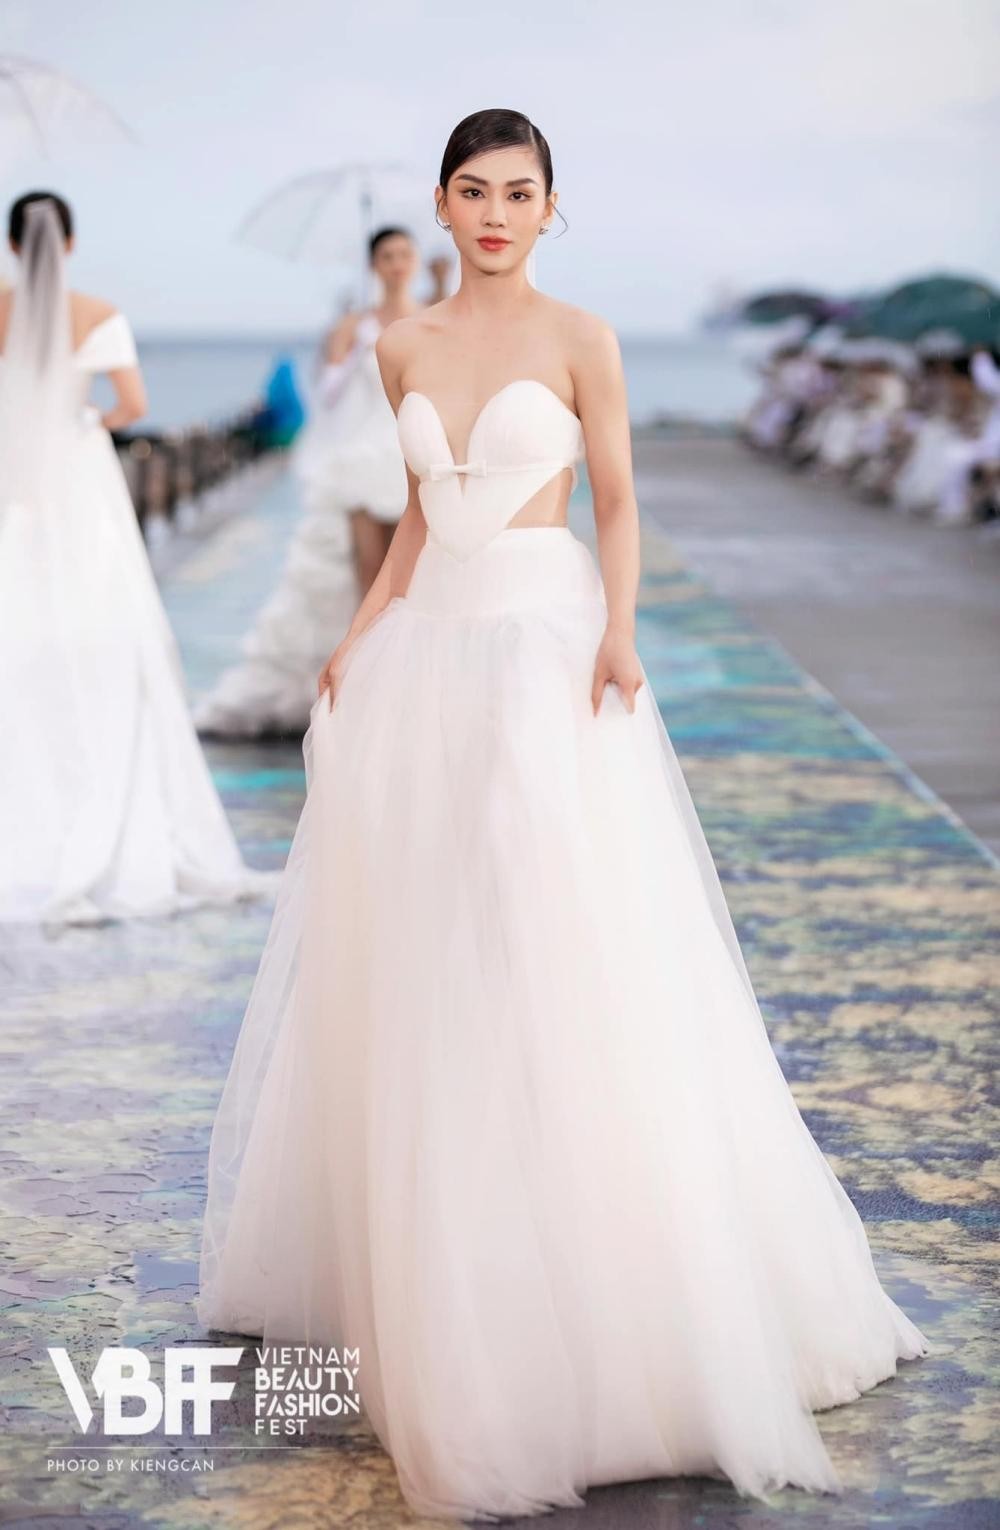 Hoa hậu Mai Phương cực khéo chọn đầm dạ hội, thiết kế nào cũng tôn dáng tuyệt đối - Ảnh 3.